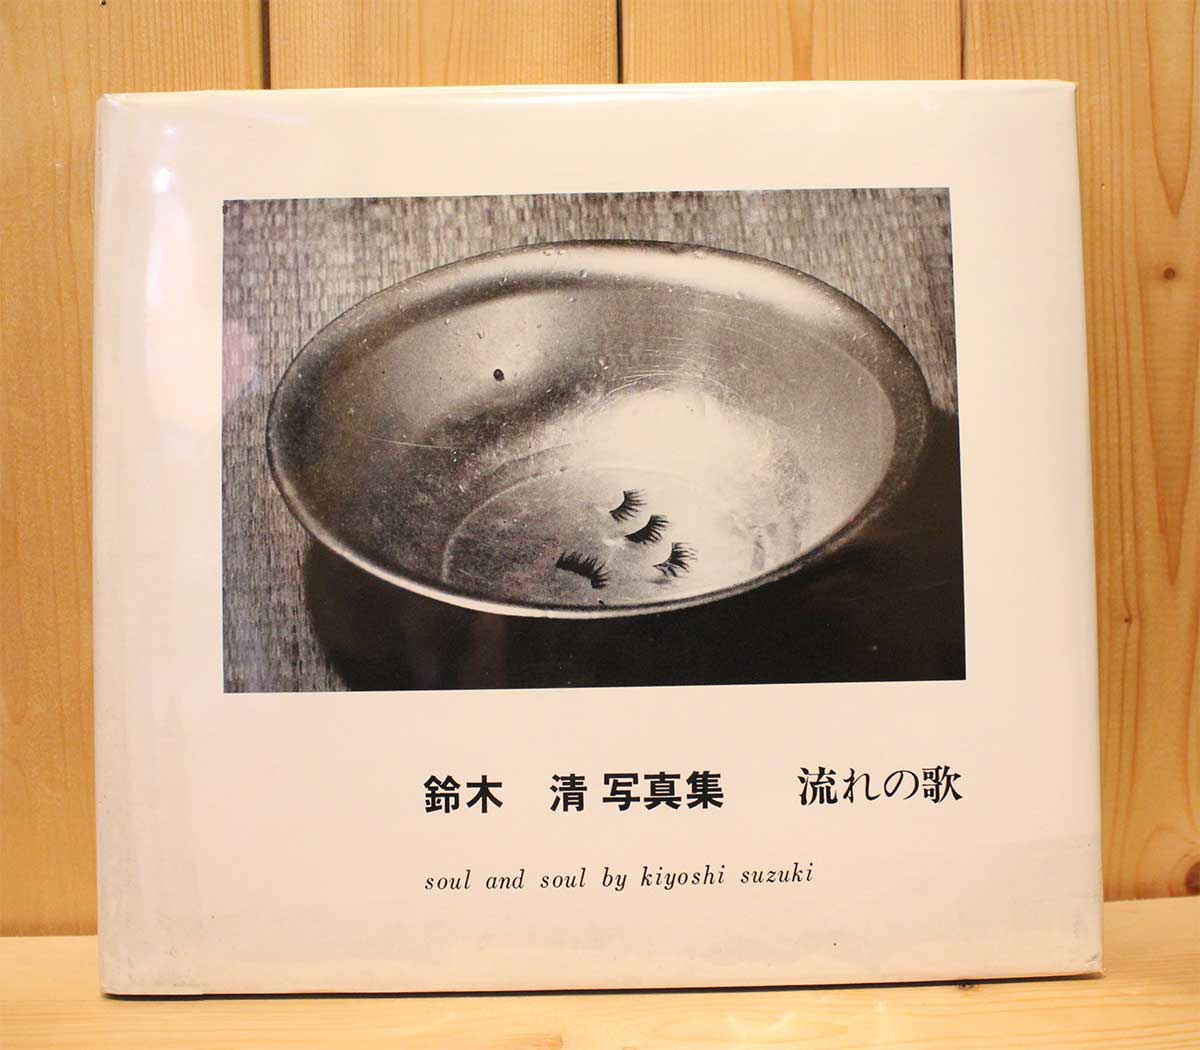 流れの歌】 鈴木清写真集 1972年発行 自費出版 1500部限定-